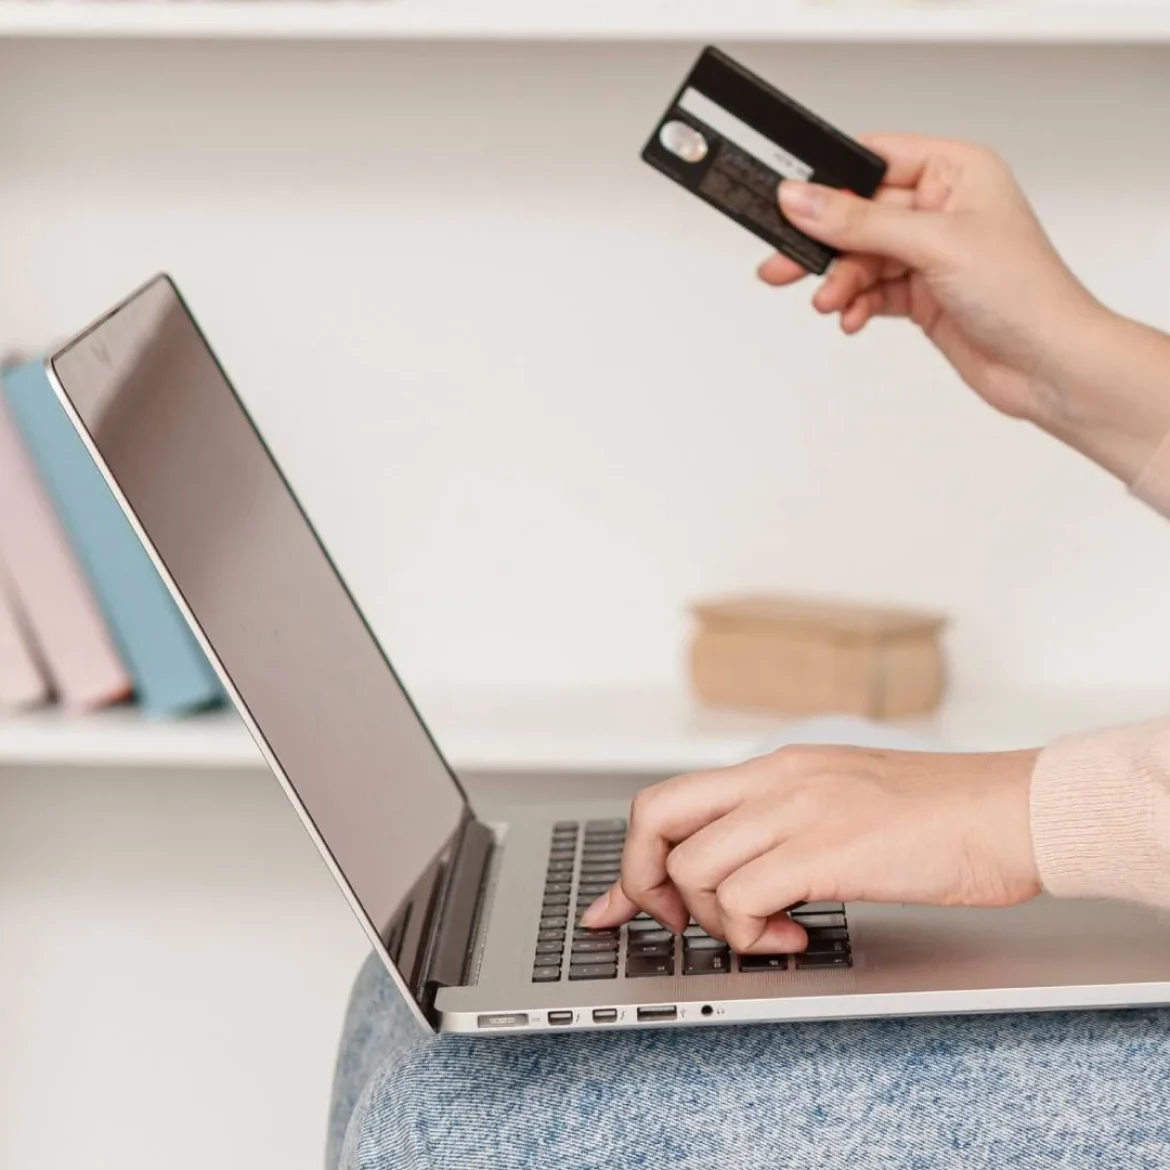 Vrouw shopt online via laptop met bankpas in rechter hand